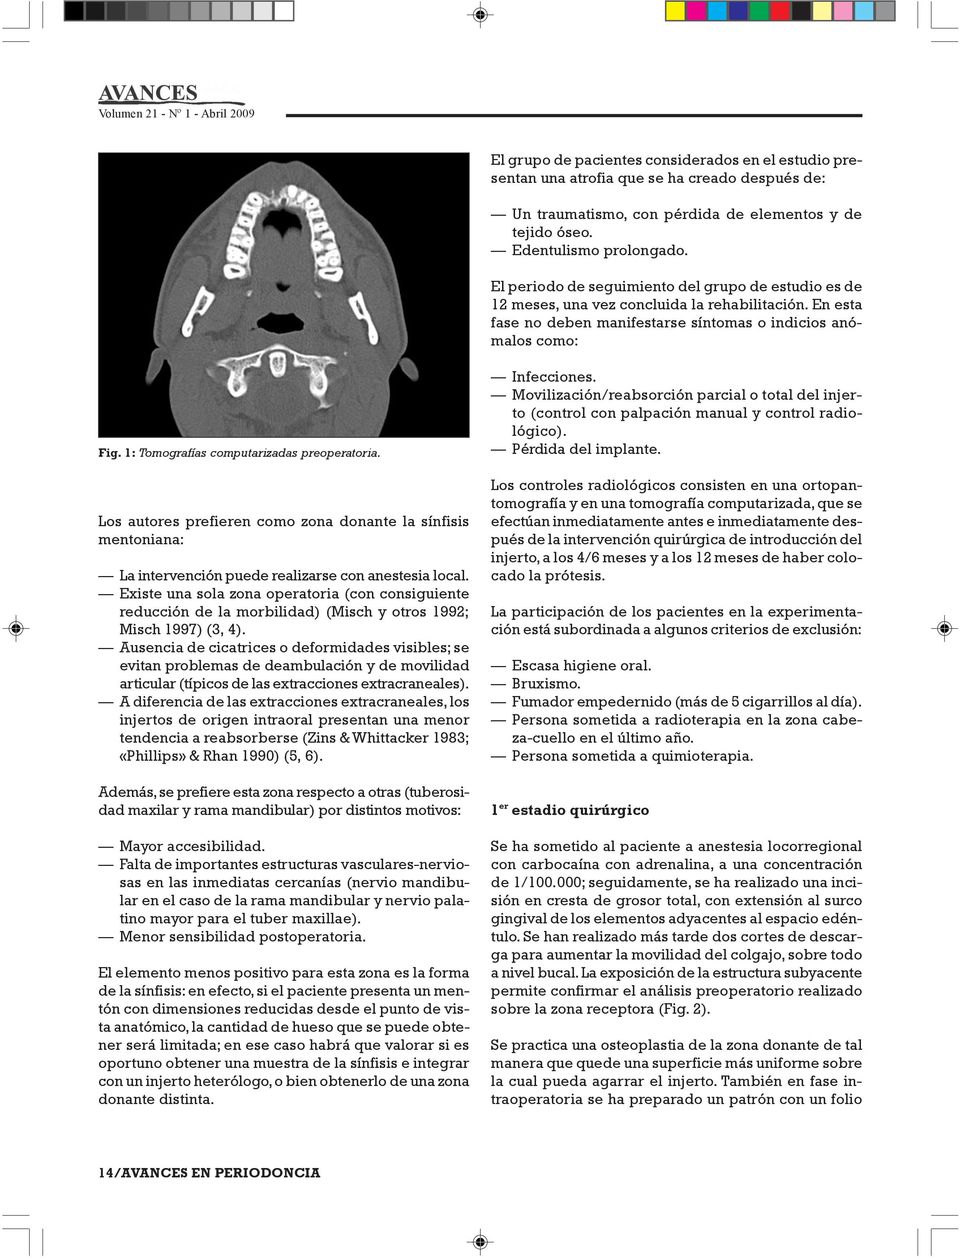 1: Tomografías computarizadas preoperatoria. Los autores prefieren como zona donante la sínfisis mentoniana: La intervención puede realizarse con anestesia local.